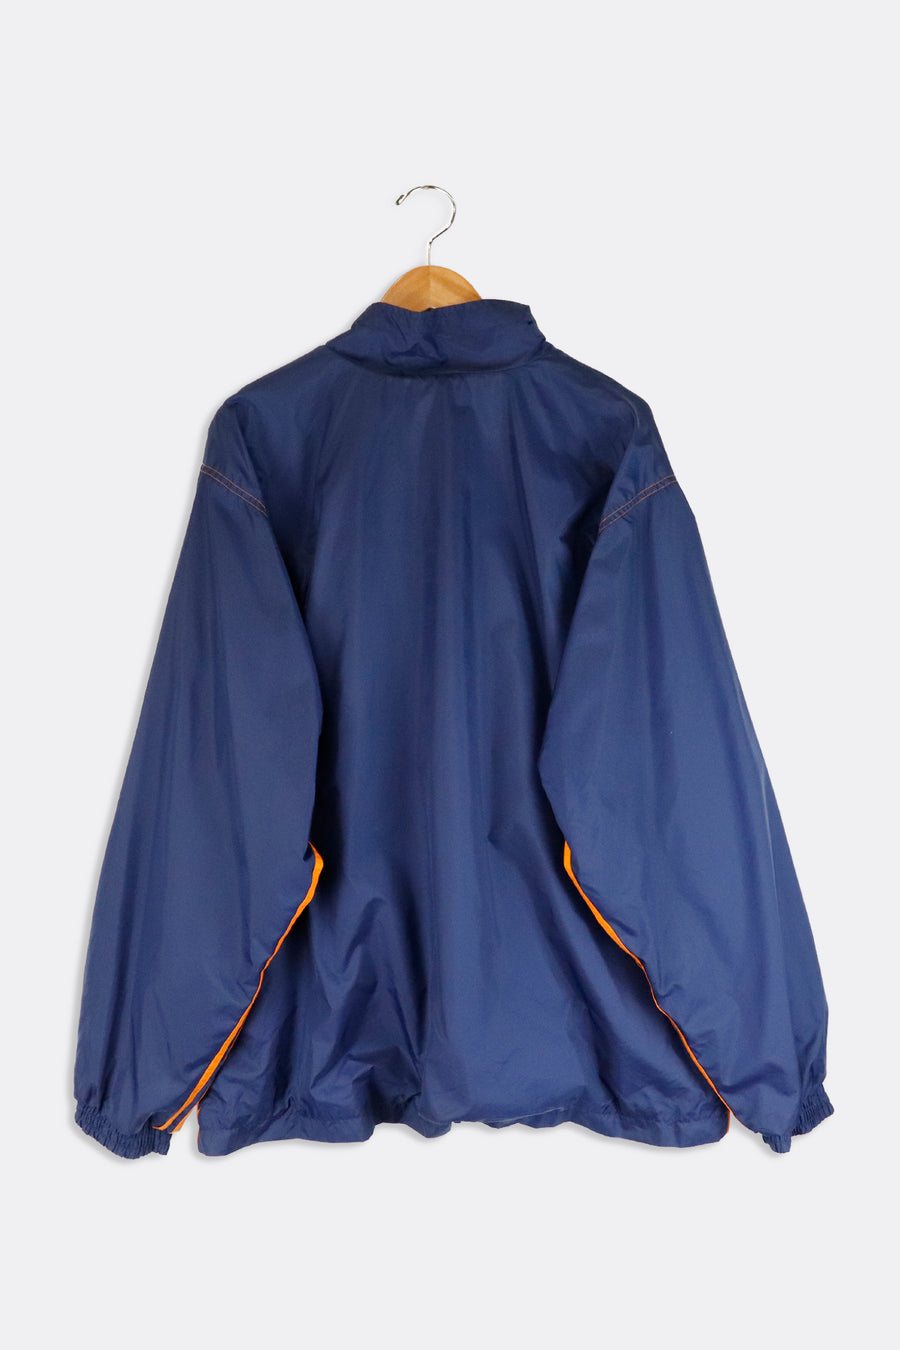 Vintage Adidas Jersey Lined Windbreaker Jacket Sz XL – F As In